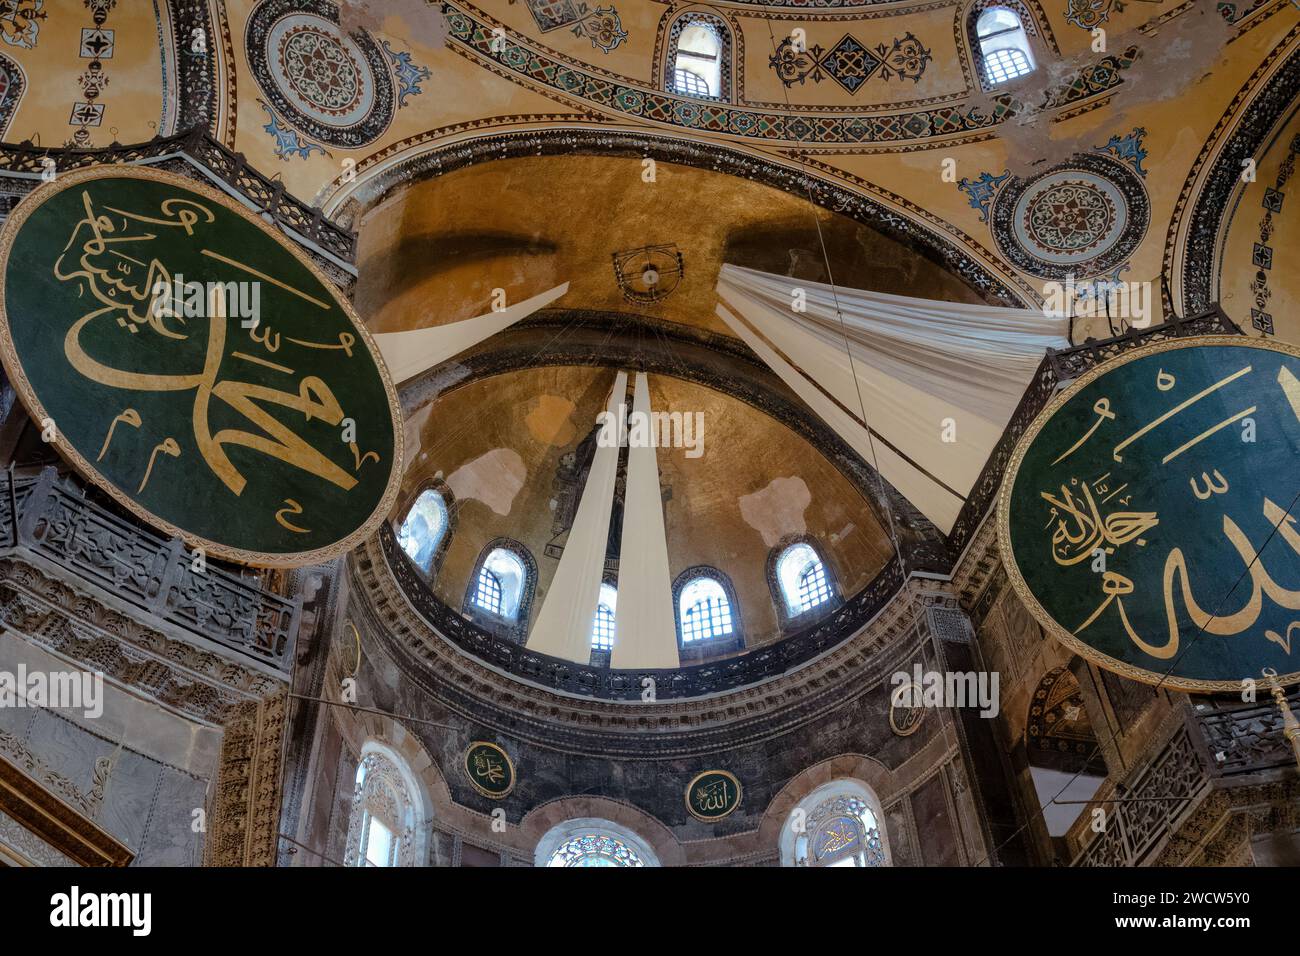 Kalligraphische Rundungen und Kuppel in der Hagia Sophia Moschee, ehemals byzantinische Kathedrale und Kulturikone der östlichen orthodoxen Welt, Istanbul Türkei Stockfoto